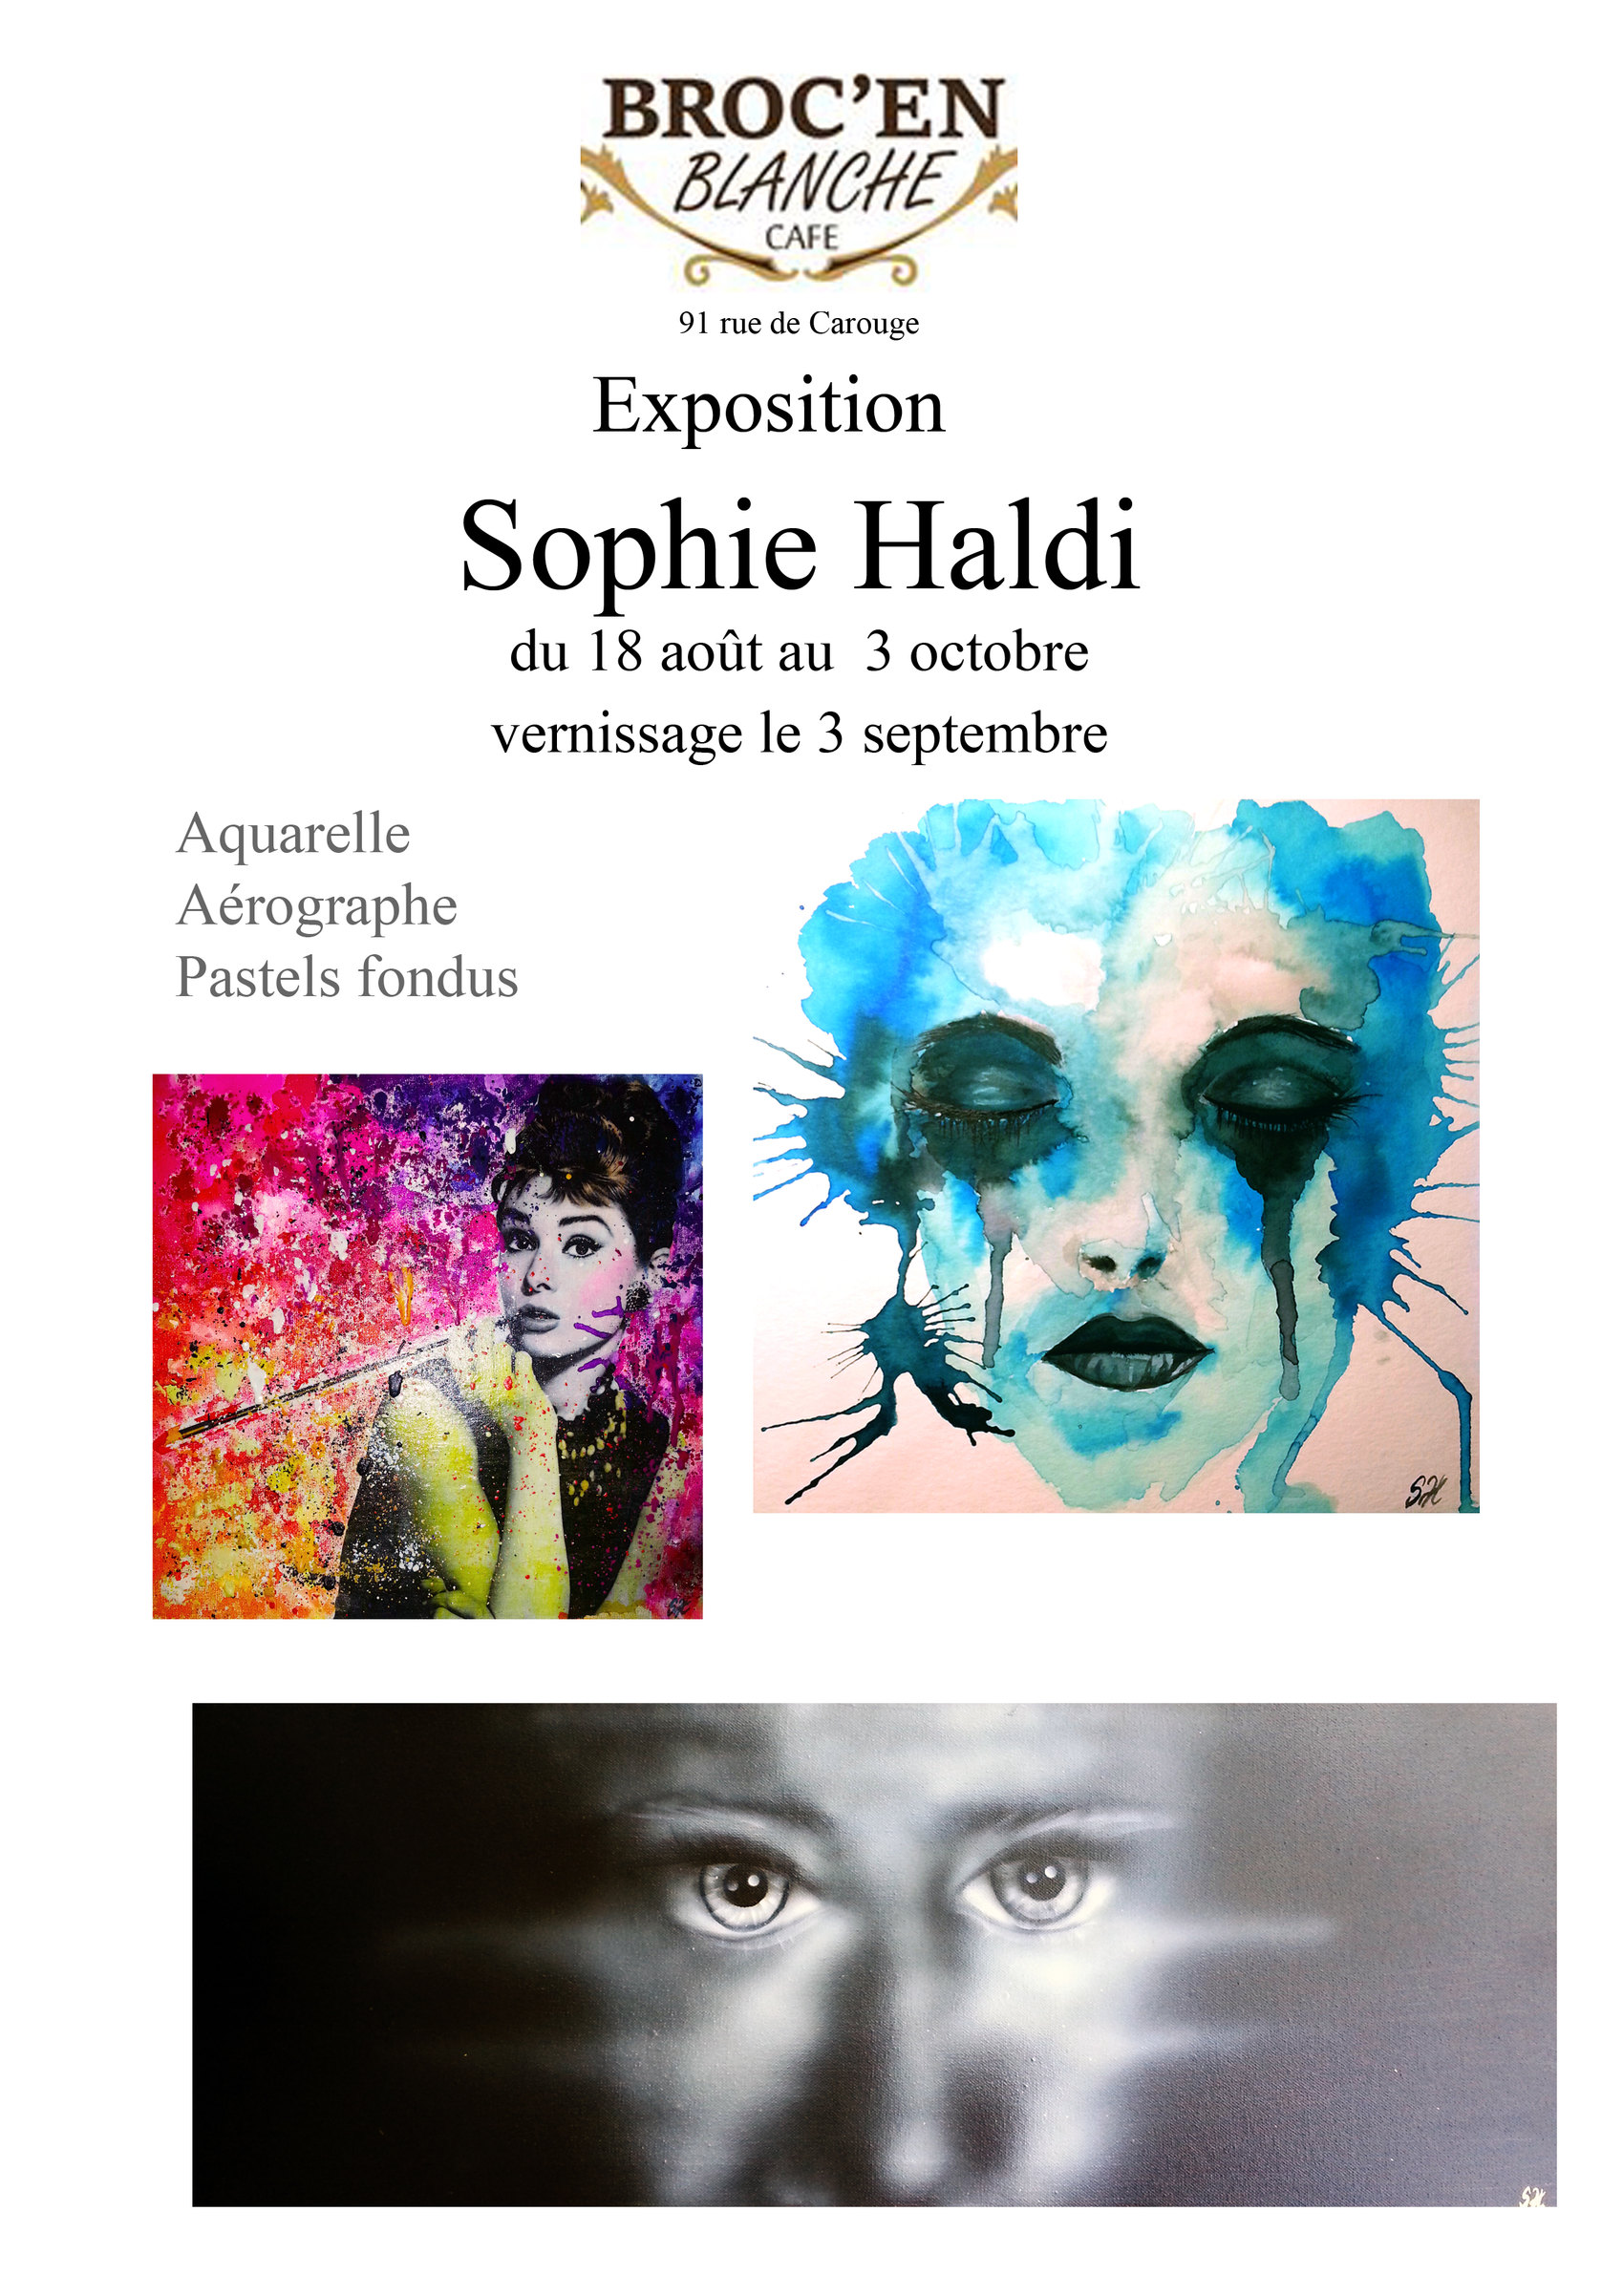 Expo de Sophie Haldi